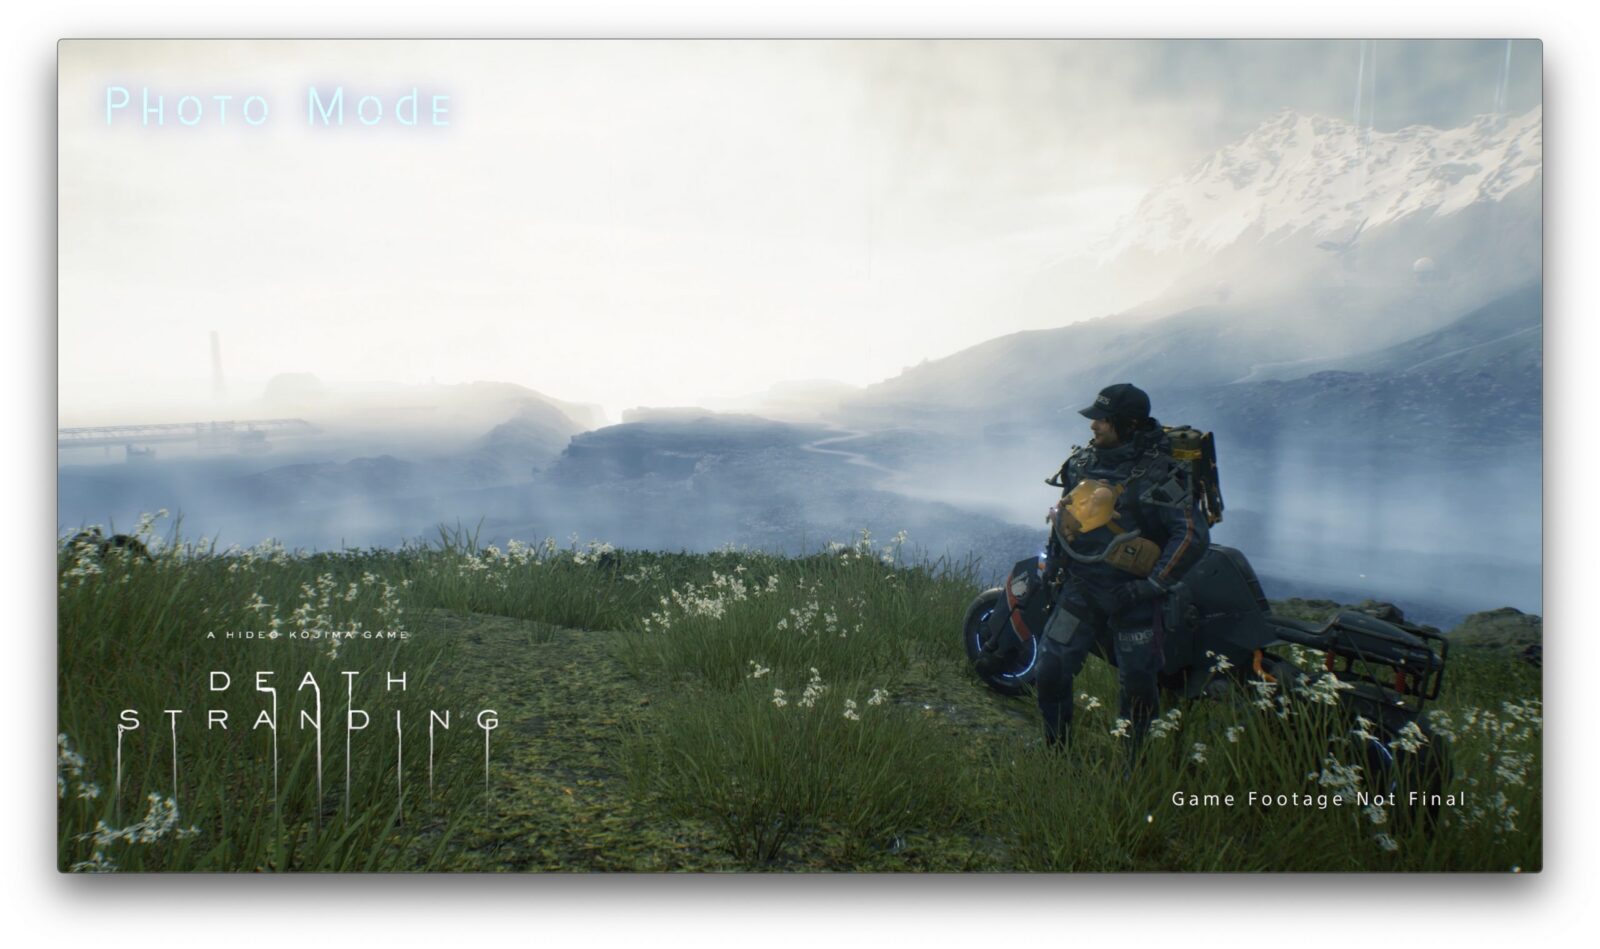 Death Stranding: Photo Mode kini bisa kamu nikmati di PlayStation 4